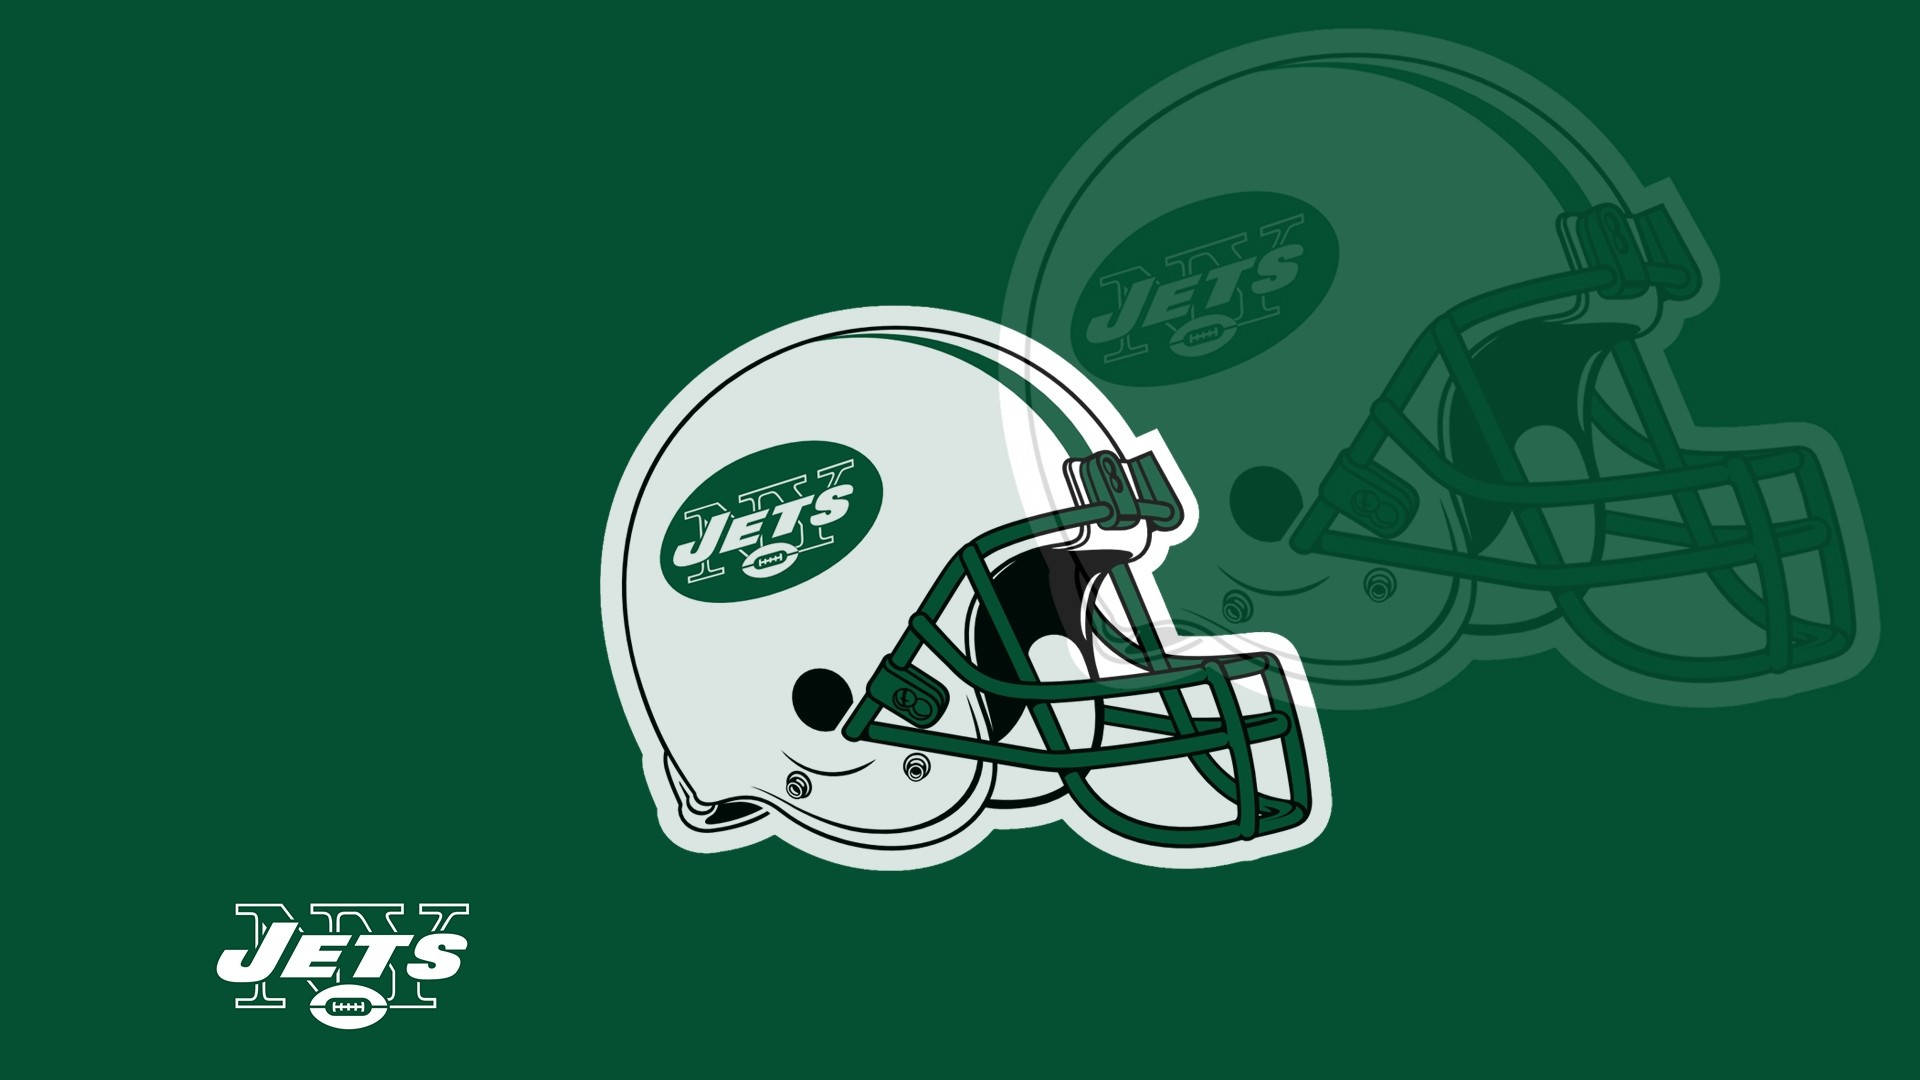 Nova York Jets, Equipe De Futebol Americano Da Nfl. Papel de Parede